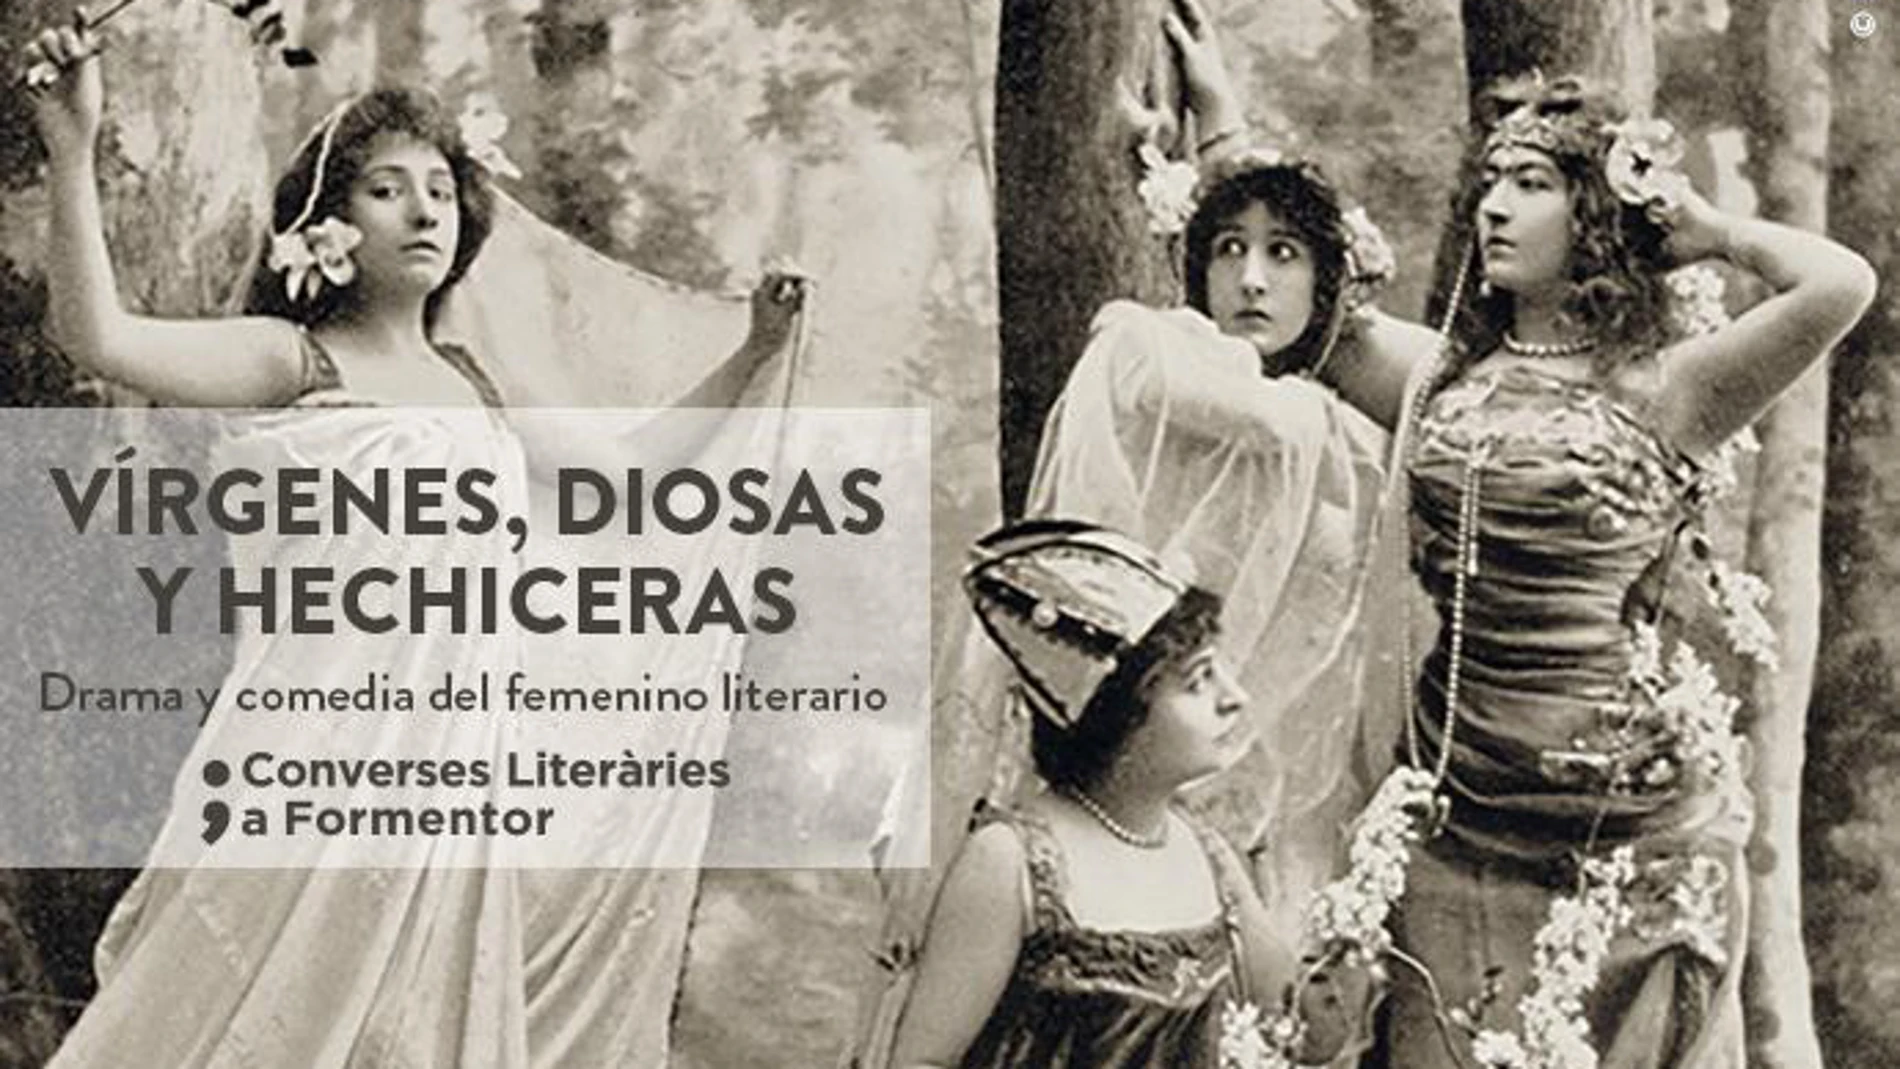 La imagen del cartel de este año 2018 pertenece al espectáculo poético “Princesas de leyenda”, puesto en escena por Jean Lorrain y estrenado en el Odeón de Paris el 10 de febrero de 1900.